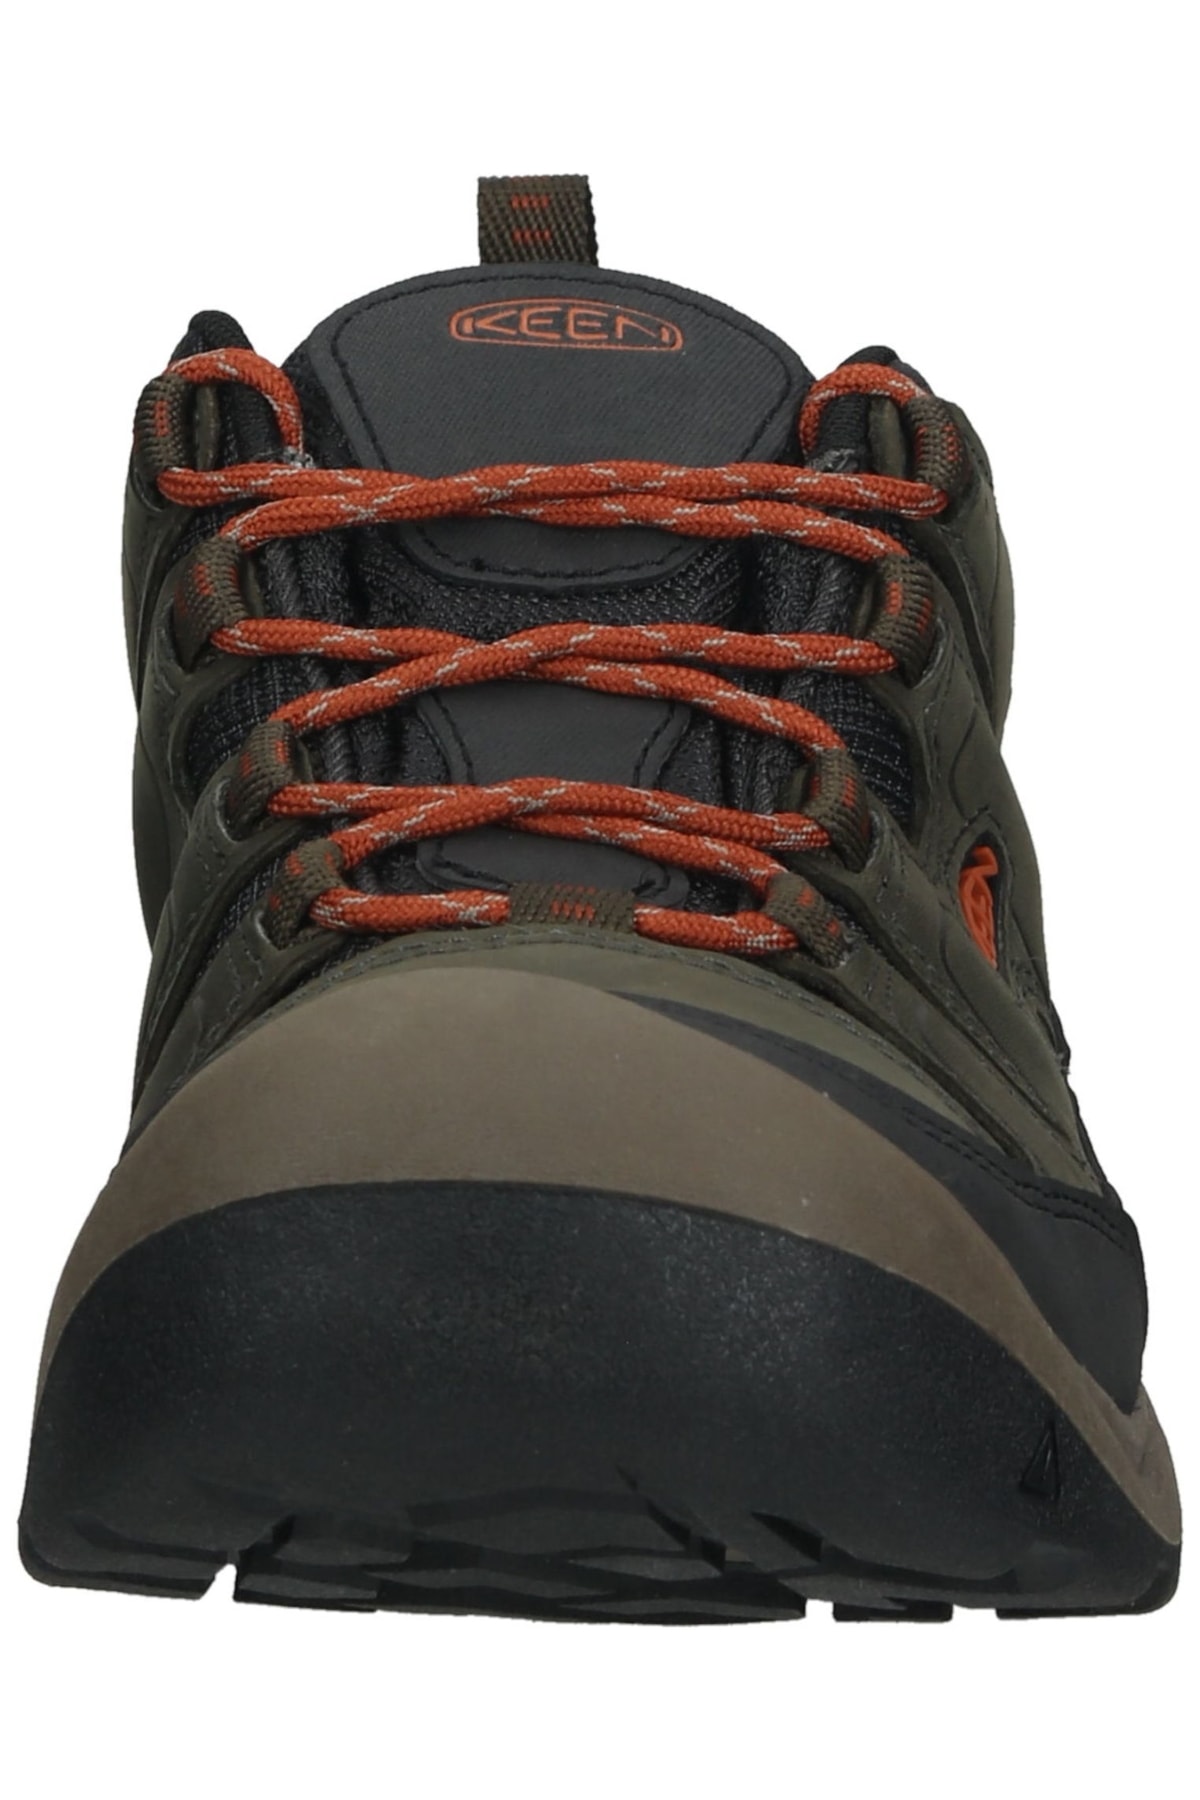 Keen Outdoor-Schuhe Braun Flacher Absatz Fast ausverkauft FN8821